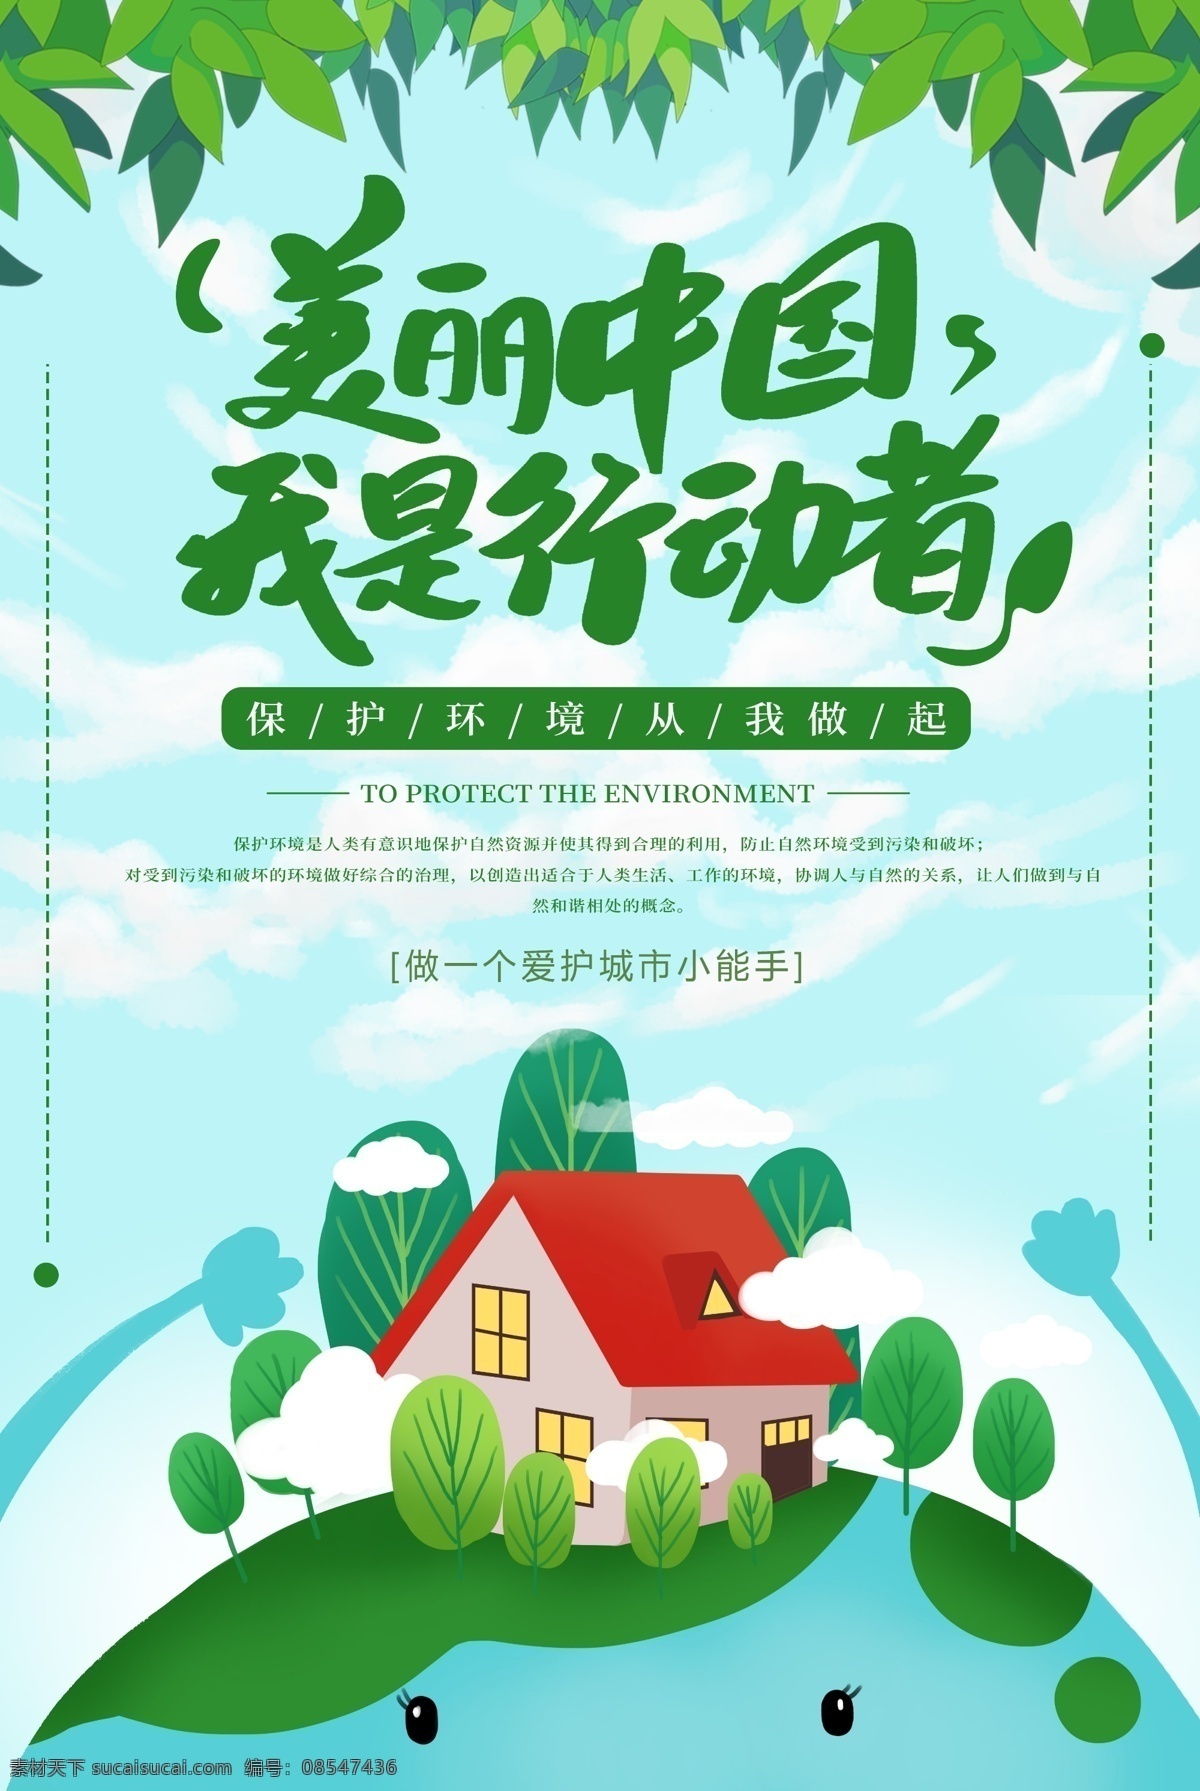 美丽 中国 行动者 绿色 公益 环保 海报 保护环境 珍惜资源 环境 资源 节约 美丽中国 我是行动者 绿色环保